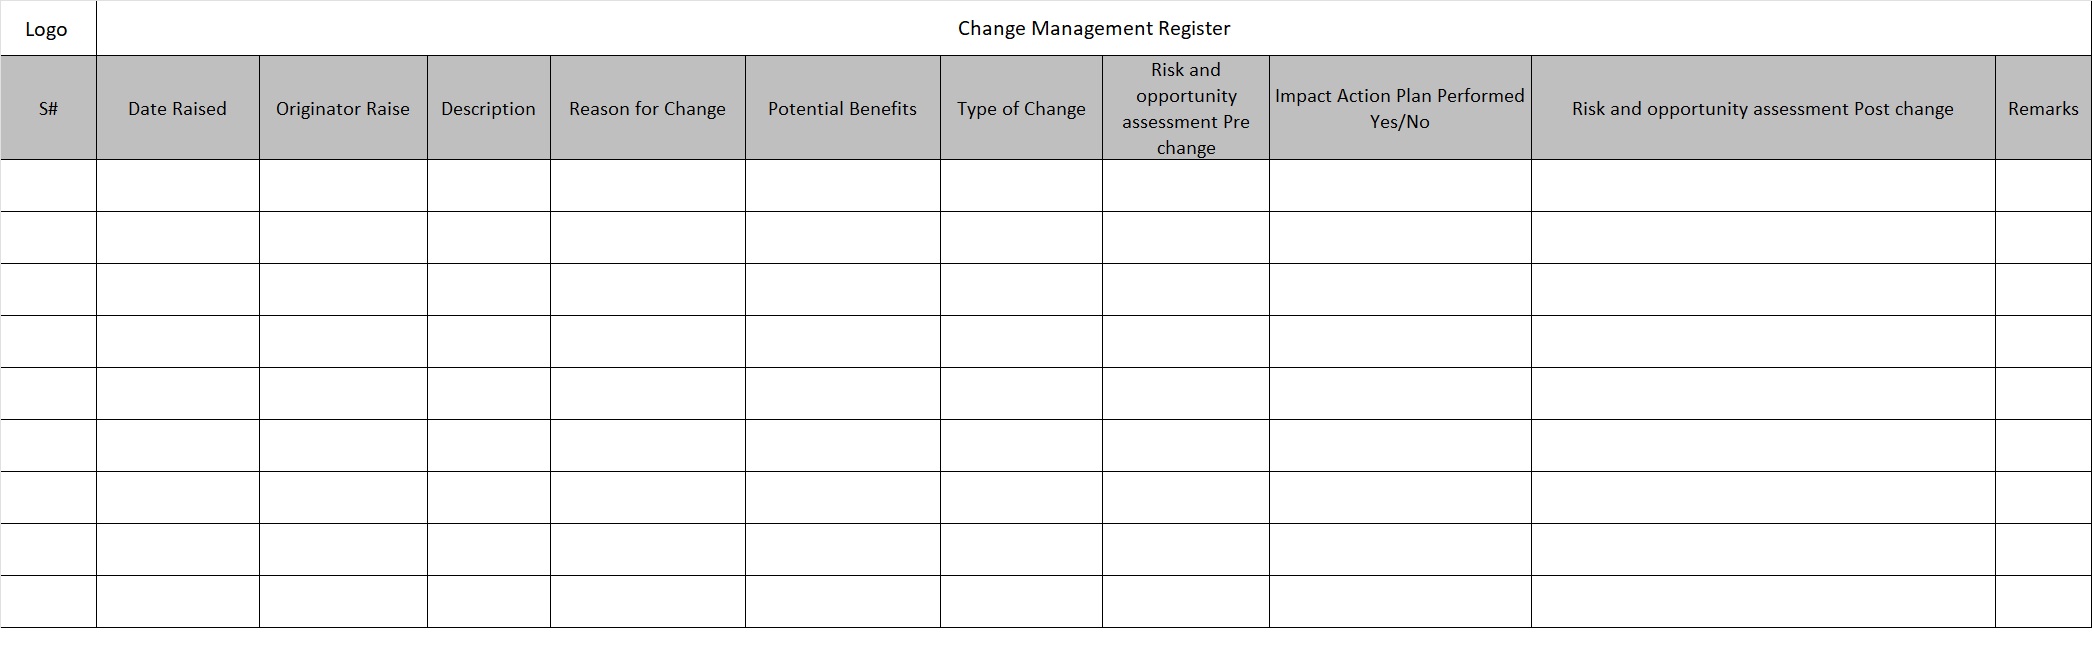 Change Management Register